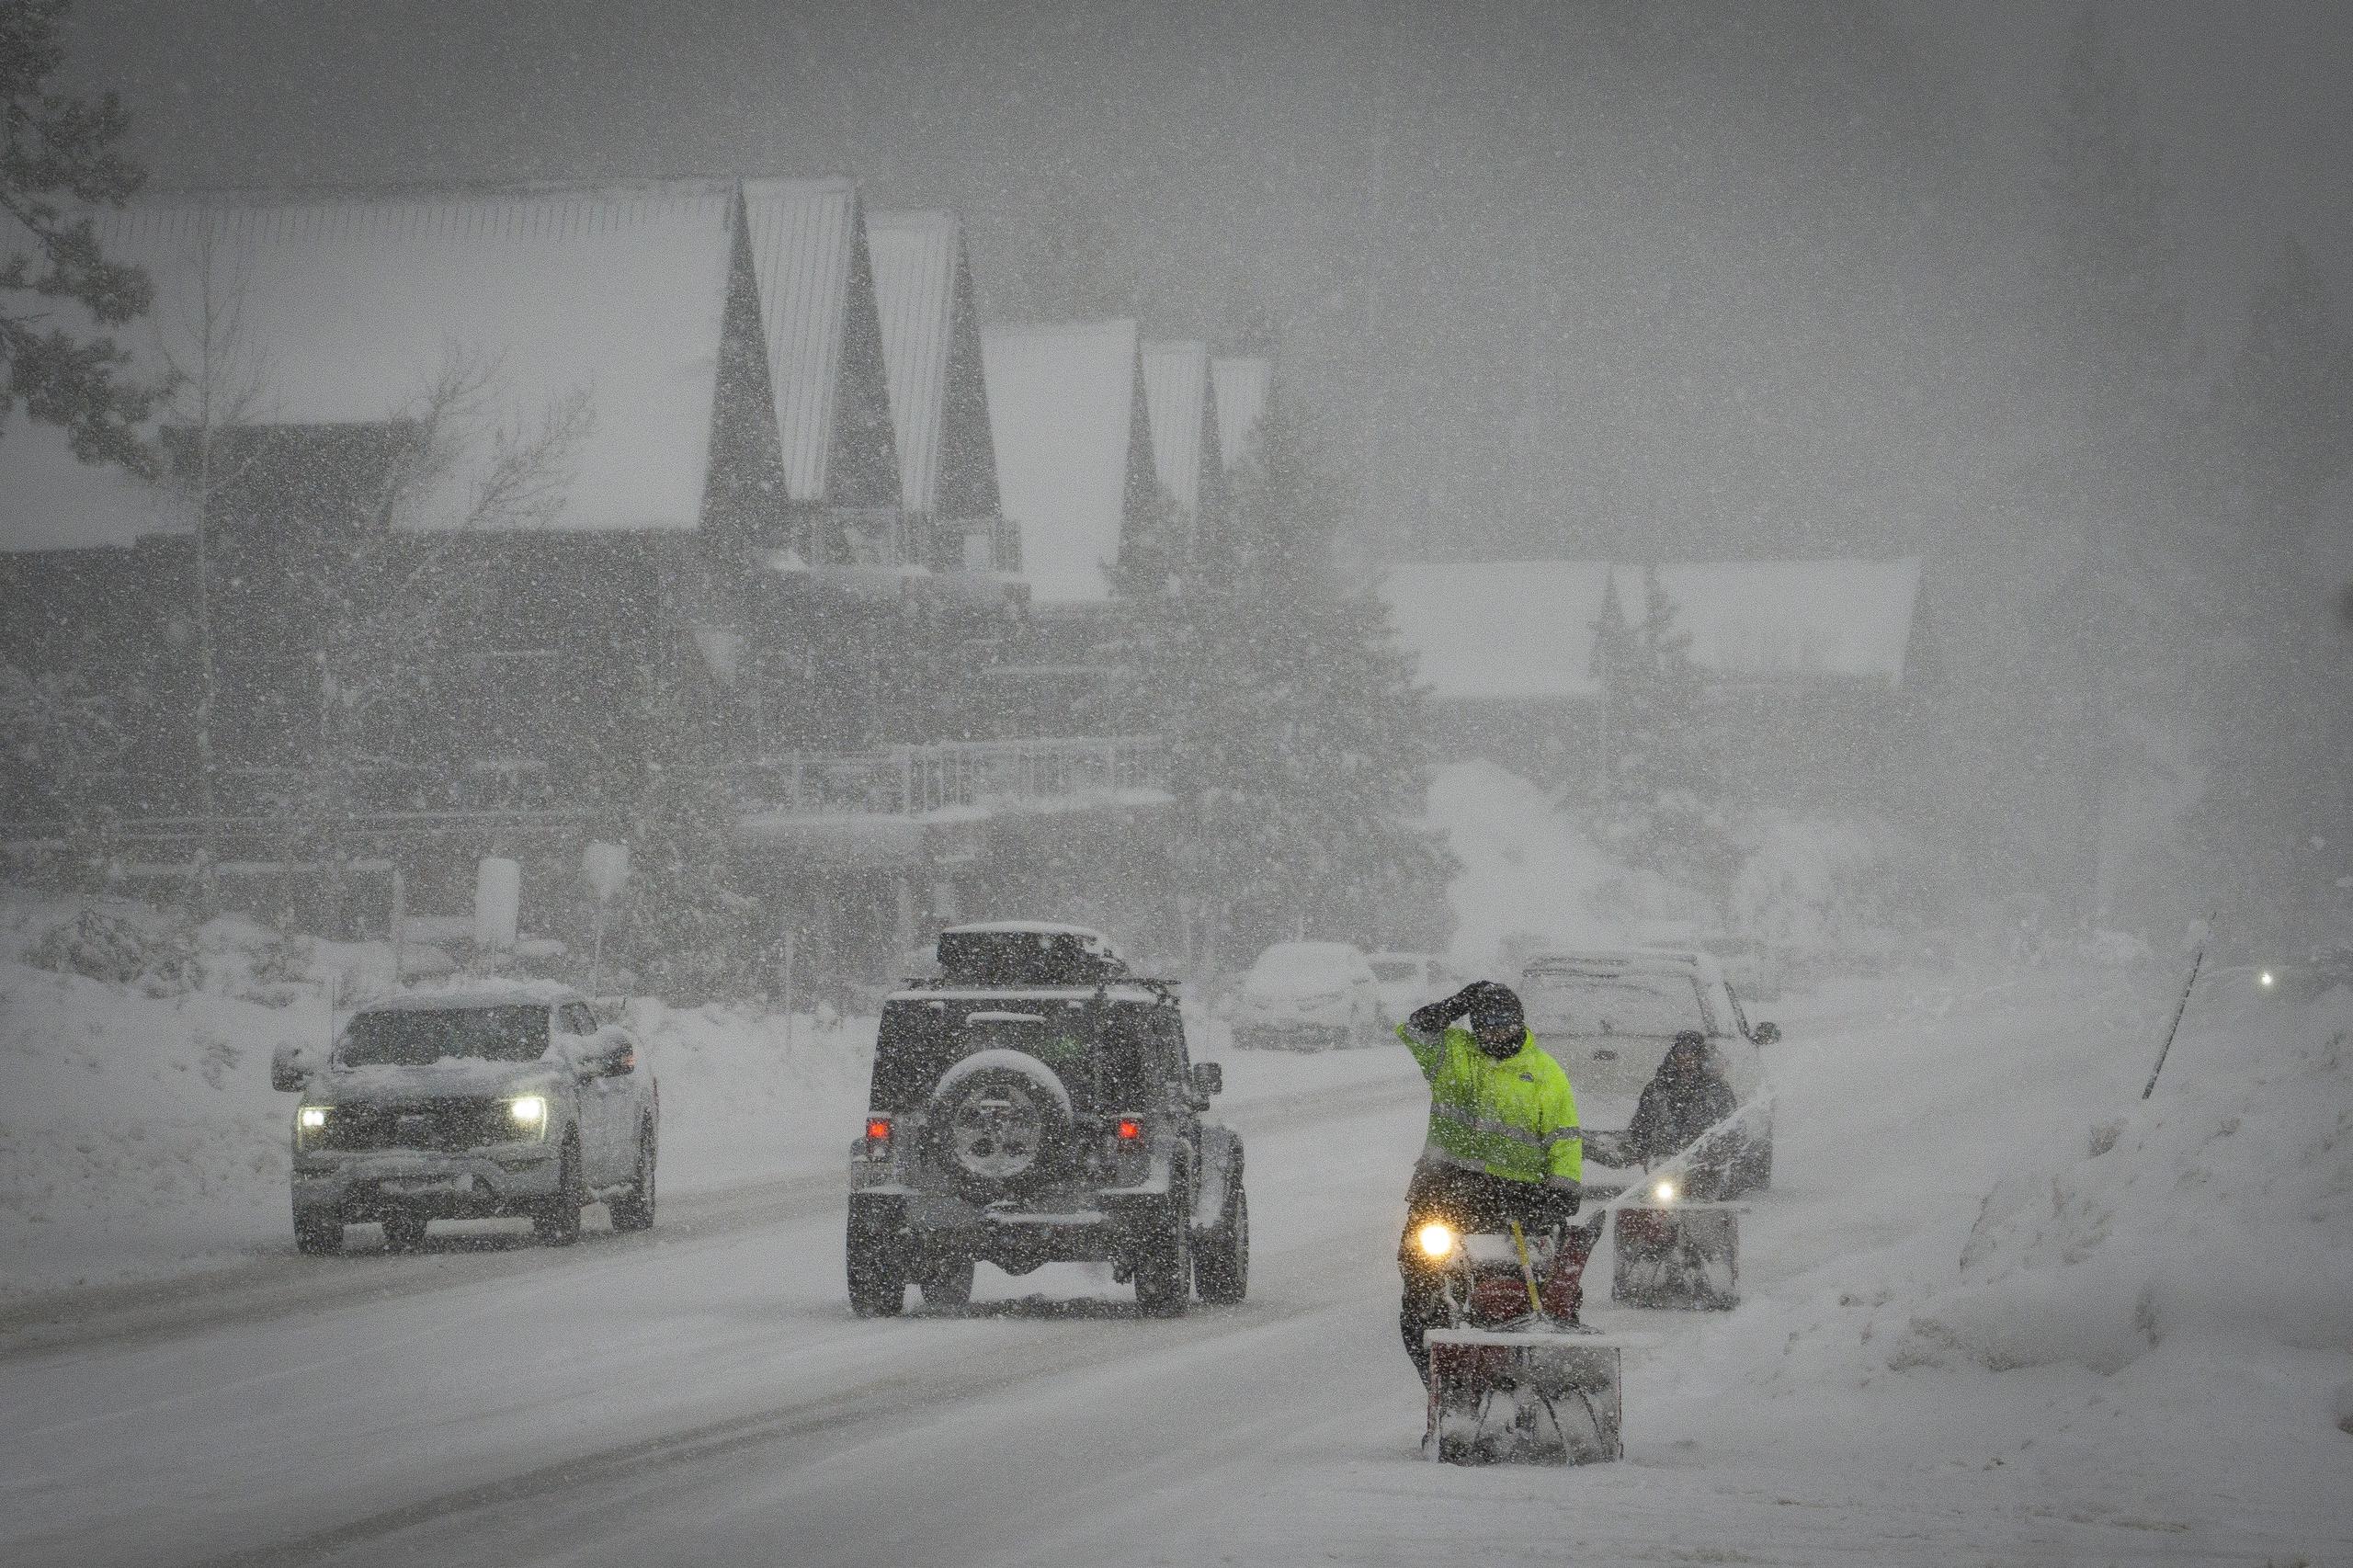 Operarios tratan de retirar la nieve de una carretera, en Truckee, California.